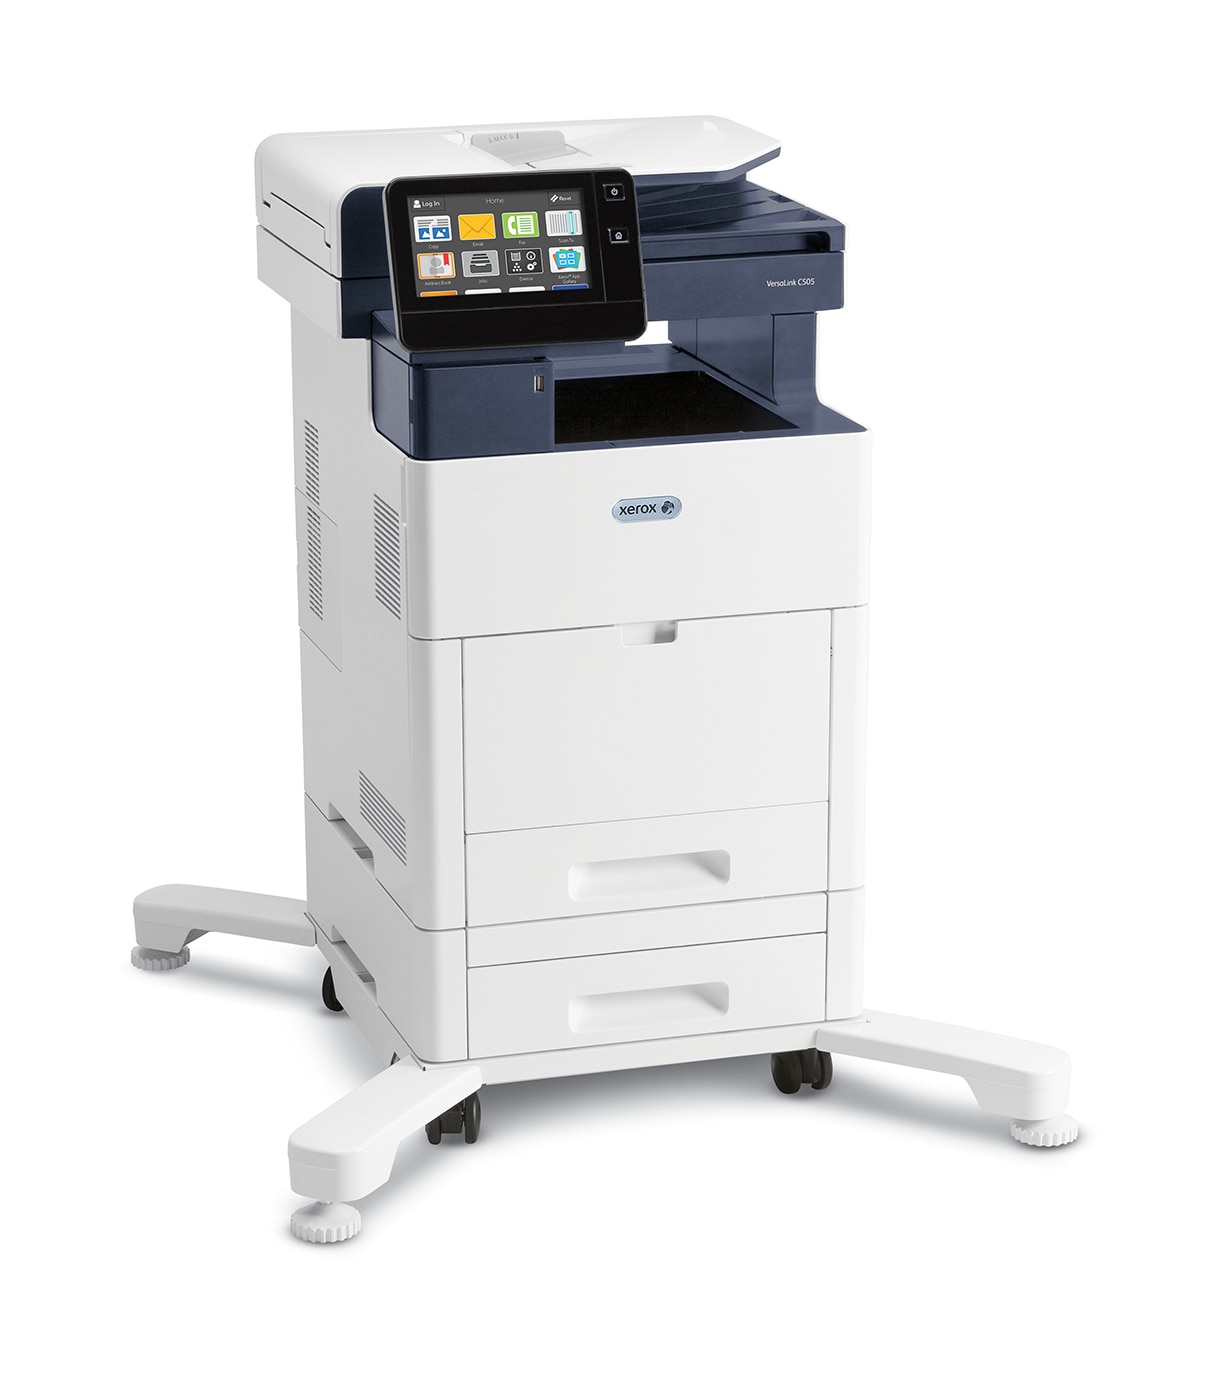  Xerox VersaLink C505 C505/XM Impresora multifunción LED,  fotocopiadora a color, fax/escáner, 45 ppm Mono/45 ppm Impresión a color,  1200 x 2400, impresión dúplex automática, 120000 páginas, 700 hojas, color  blanco 